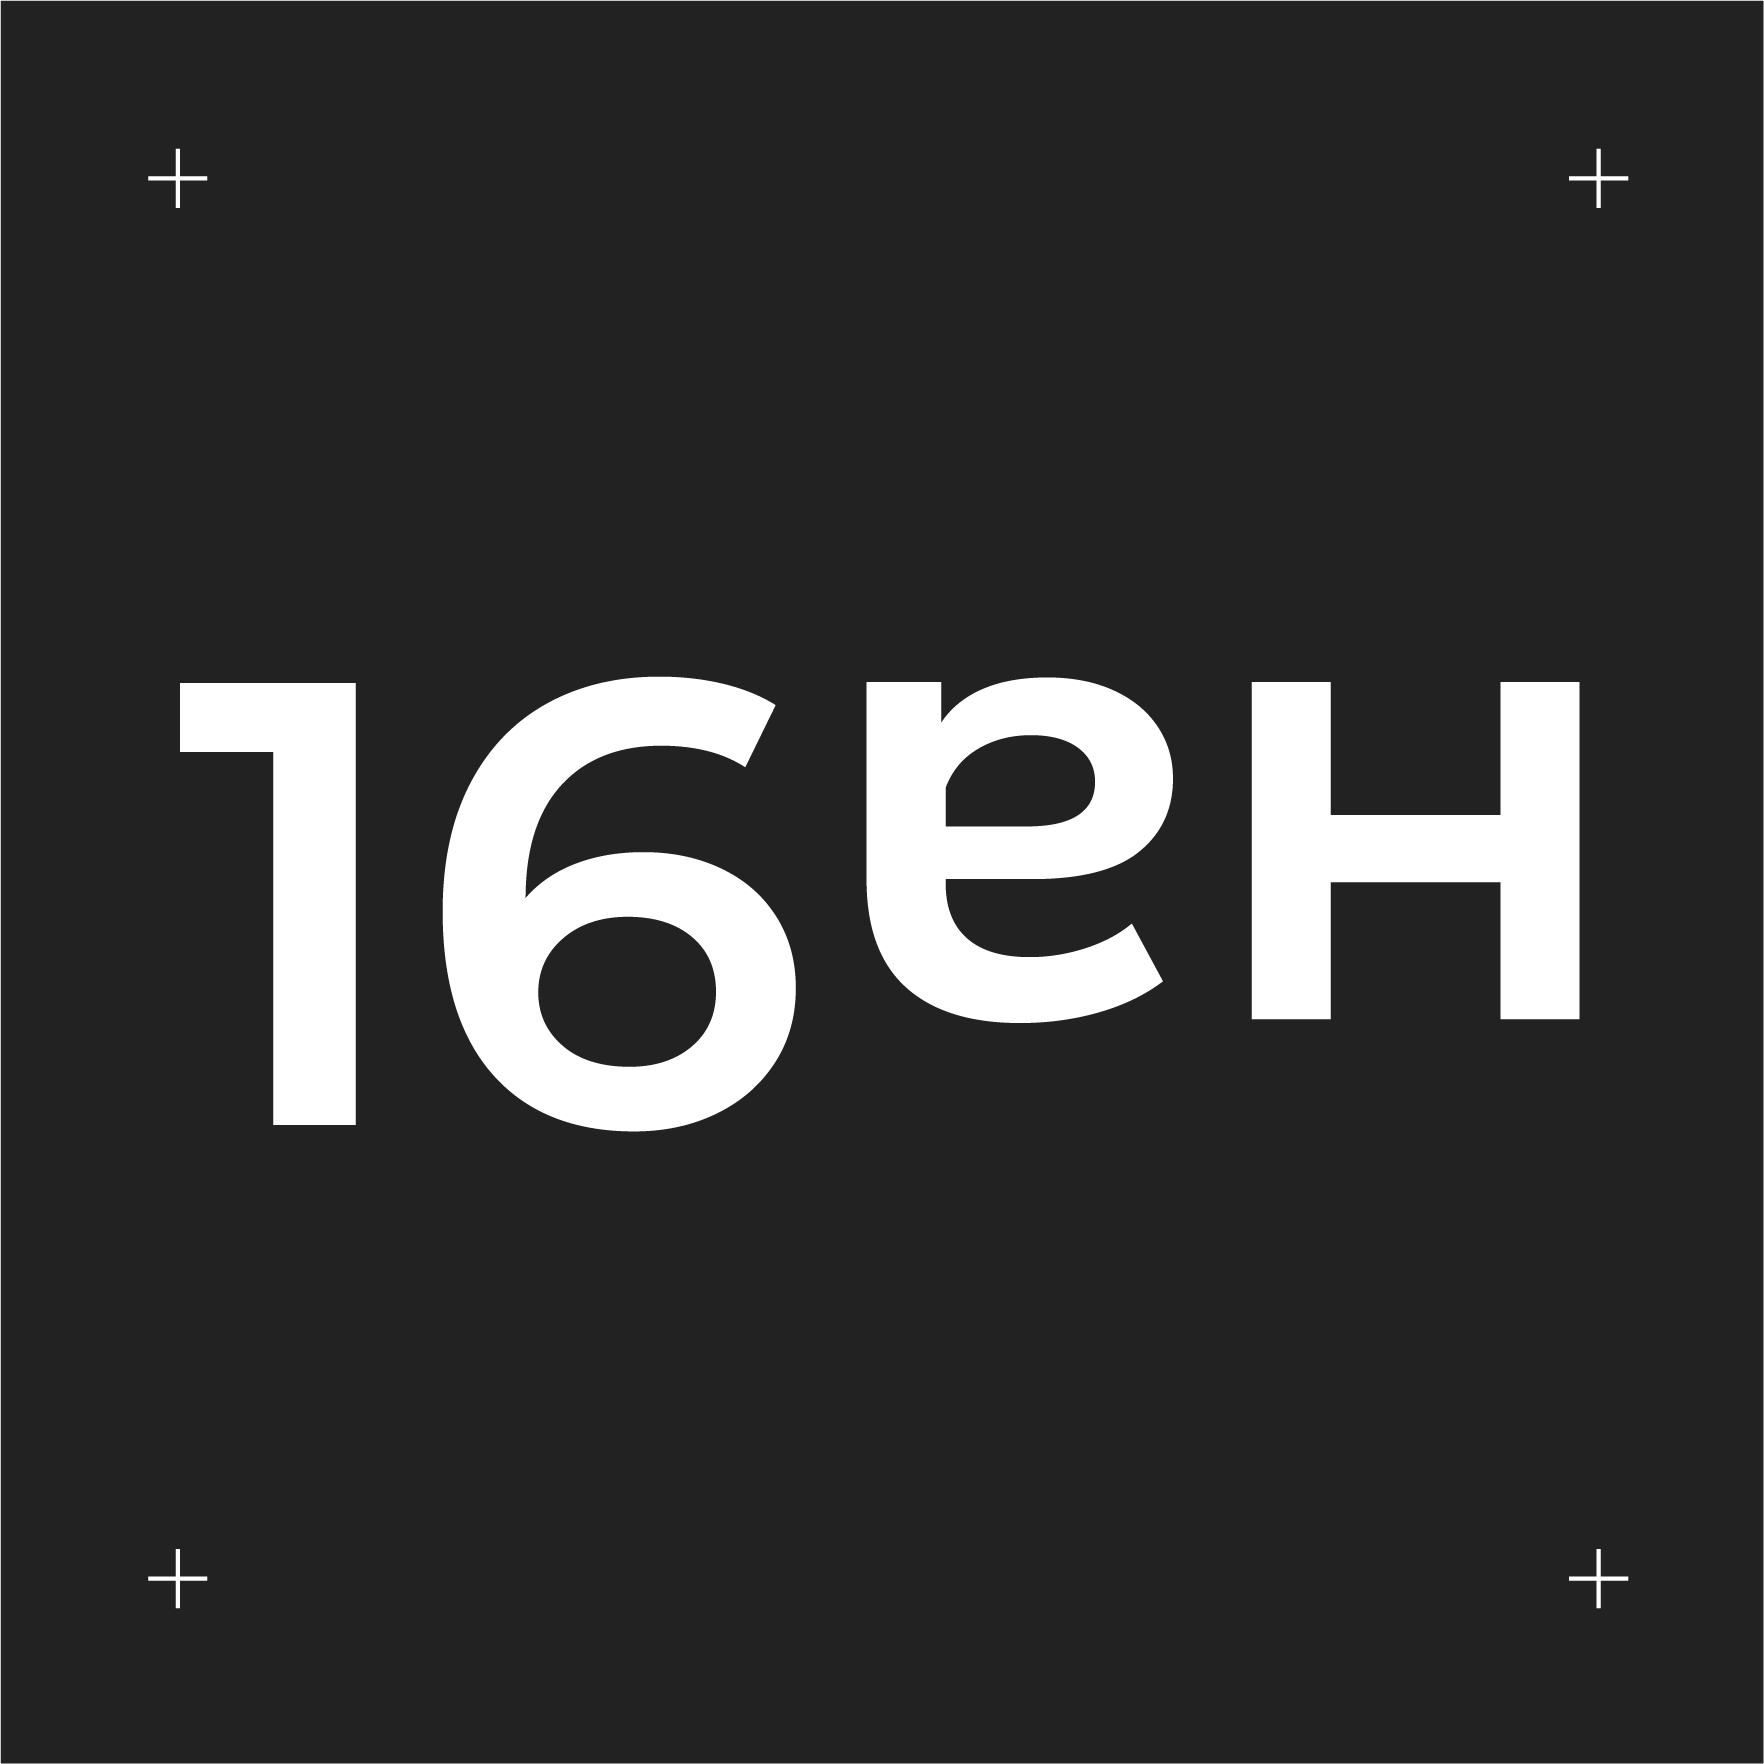 Канал шестнадцать. Изображение 16 на 9. Шестнадцать. 16:16. Шестнадцать на девять канал логотип.